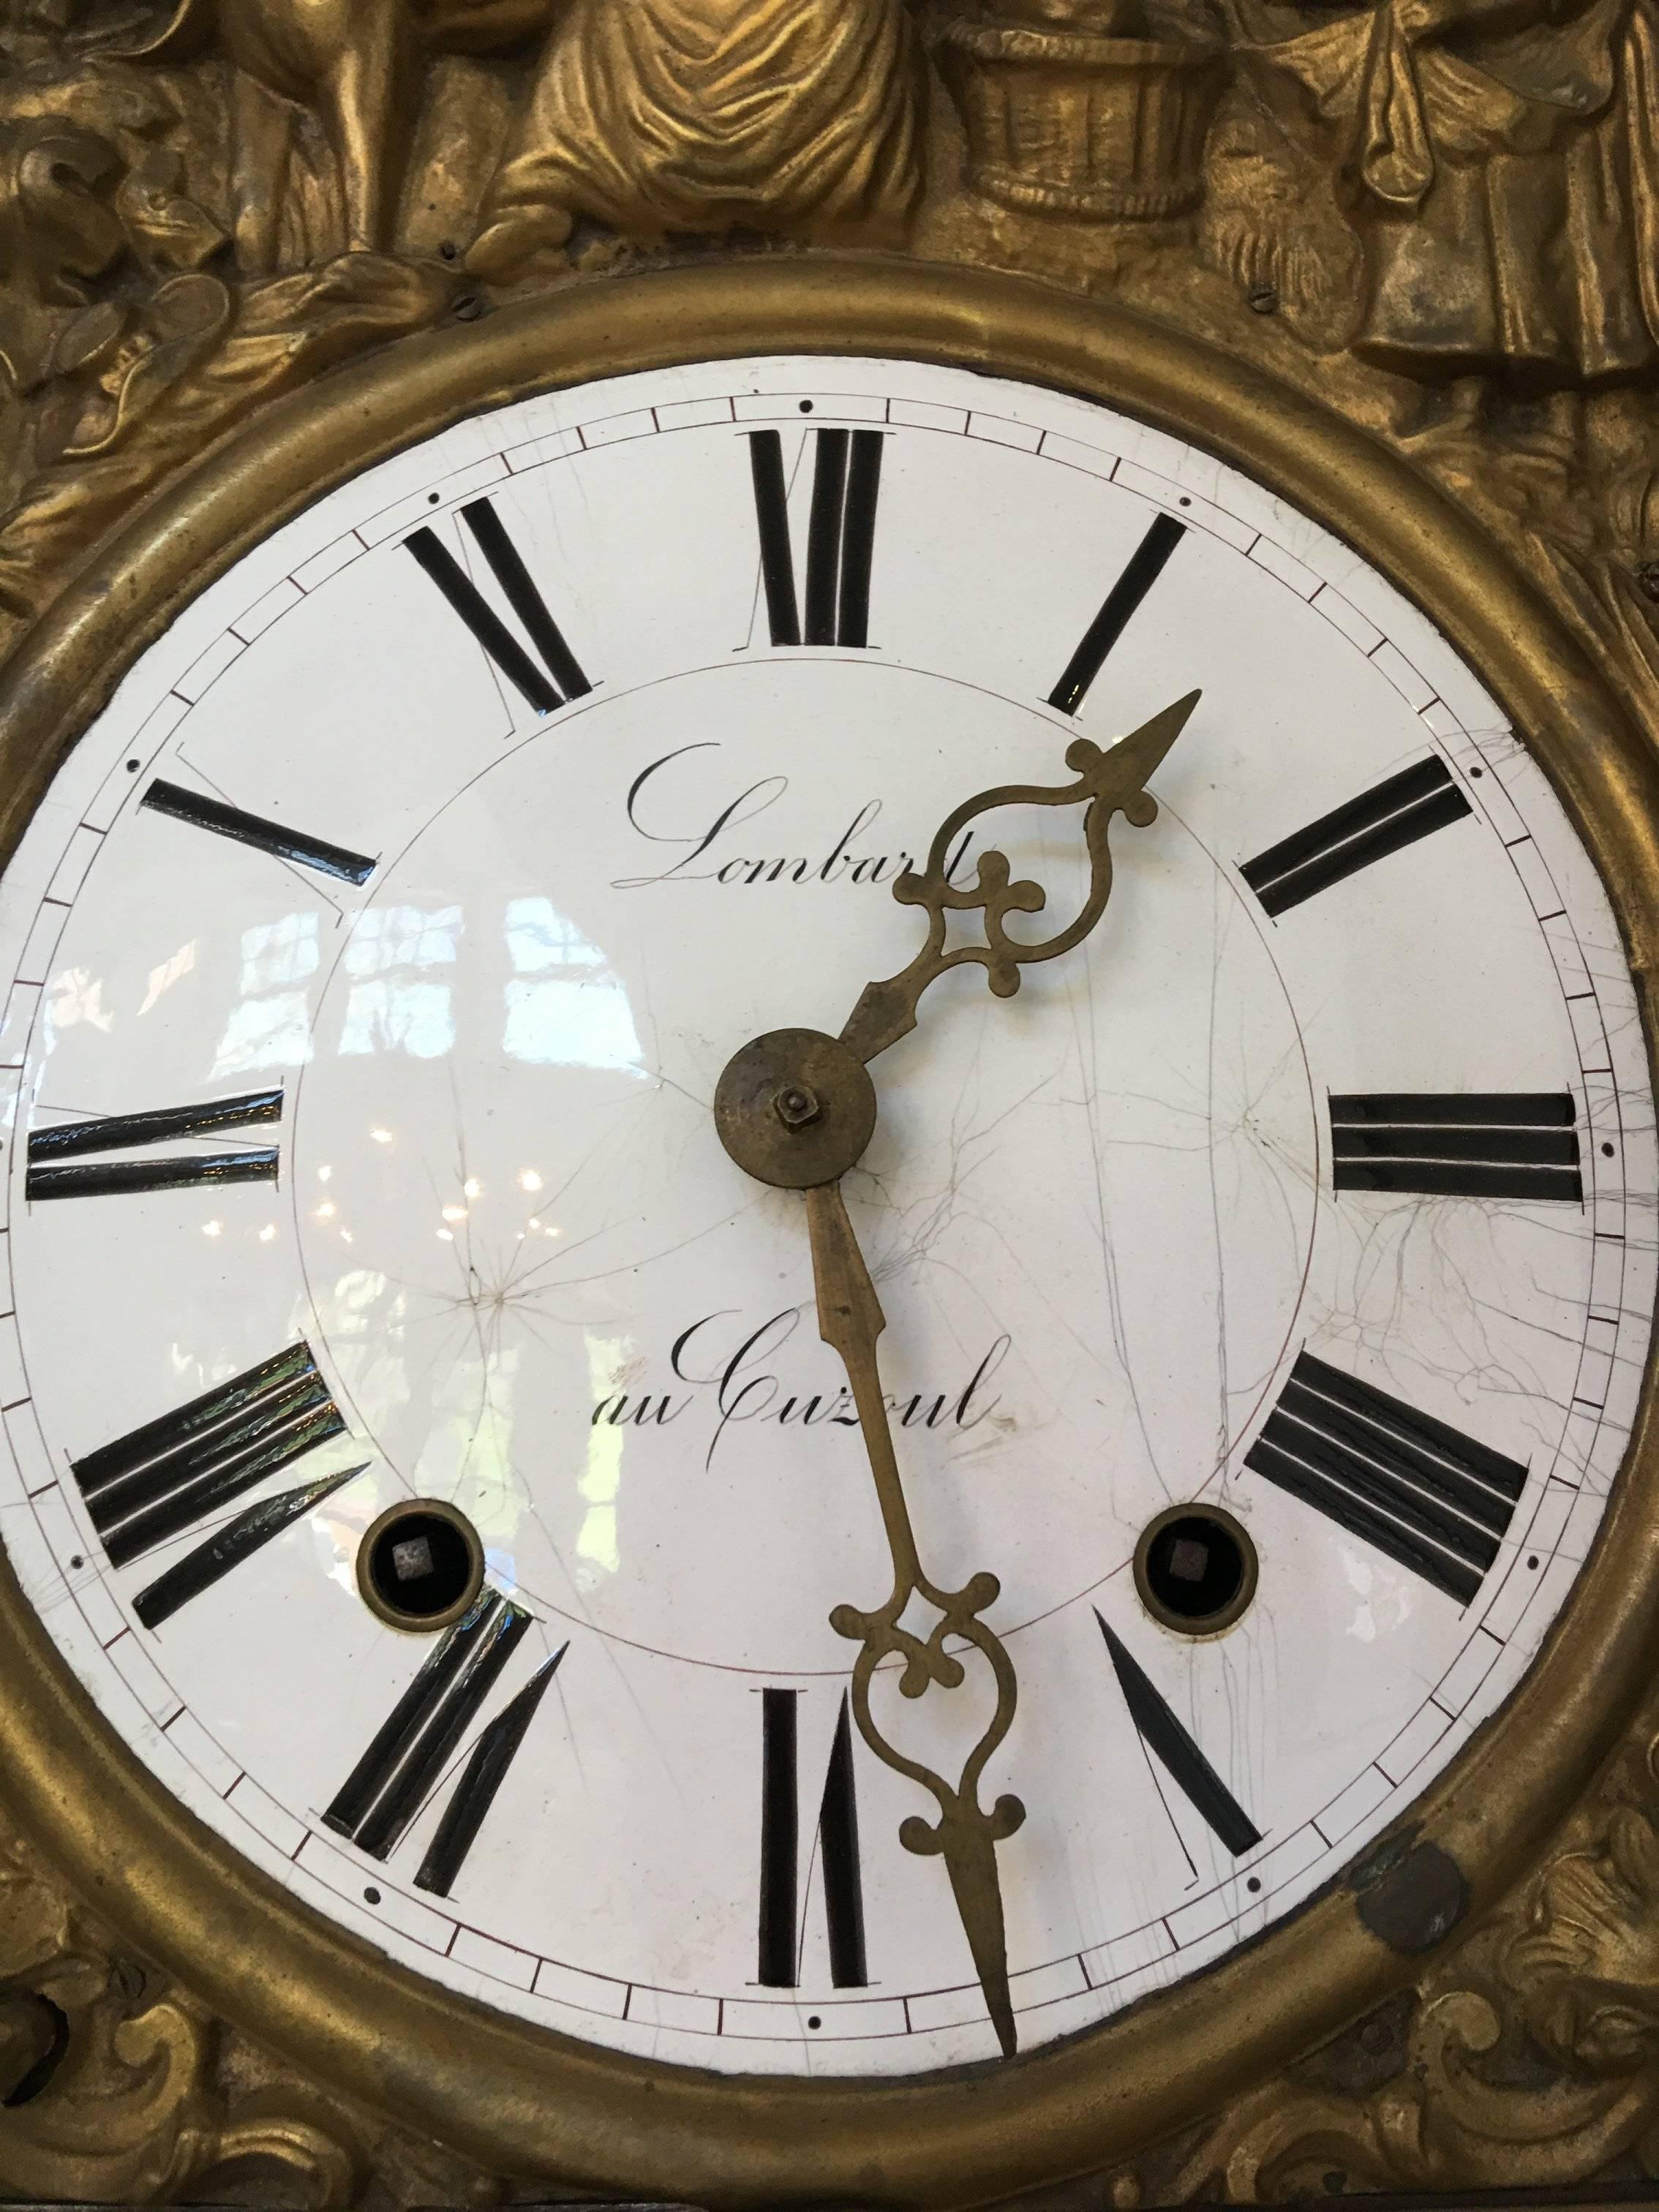 Lombard au Cuzoul Grandfather Clock 5